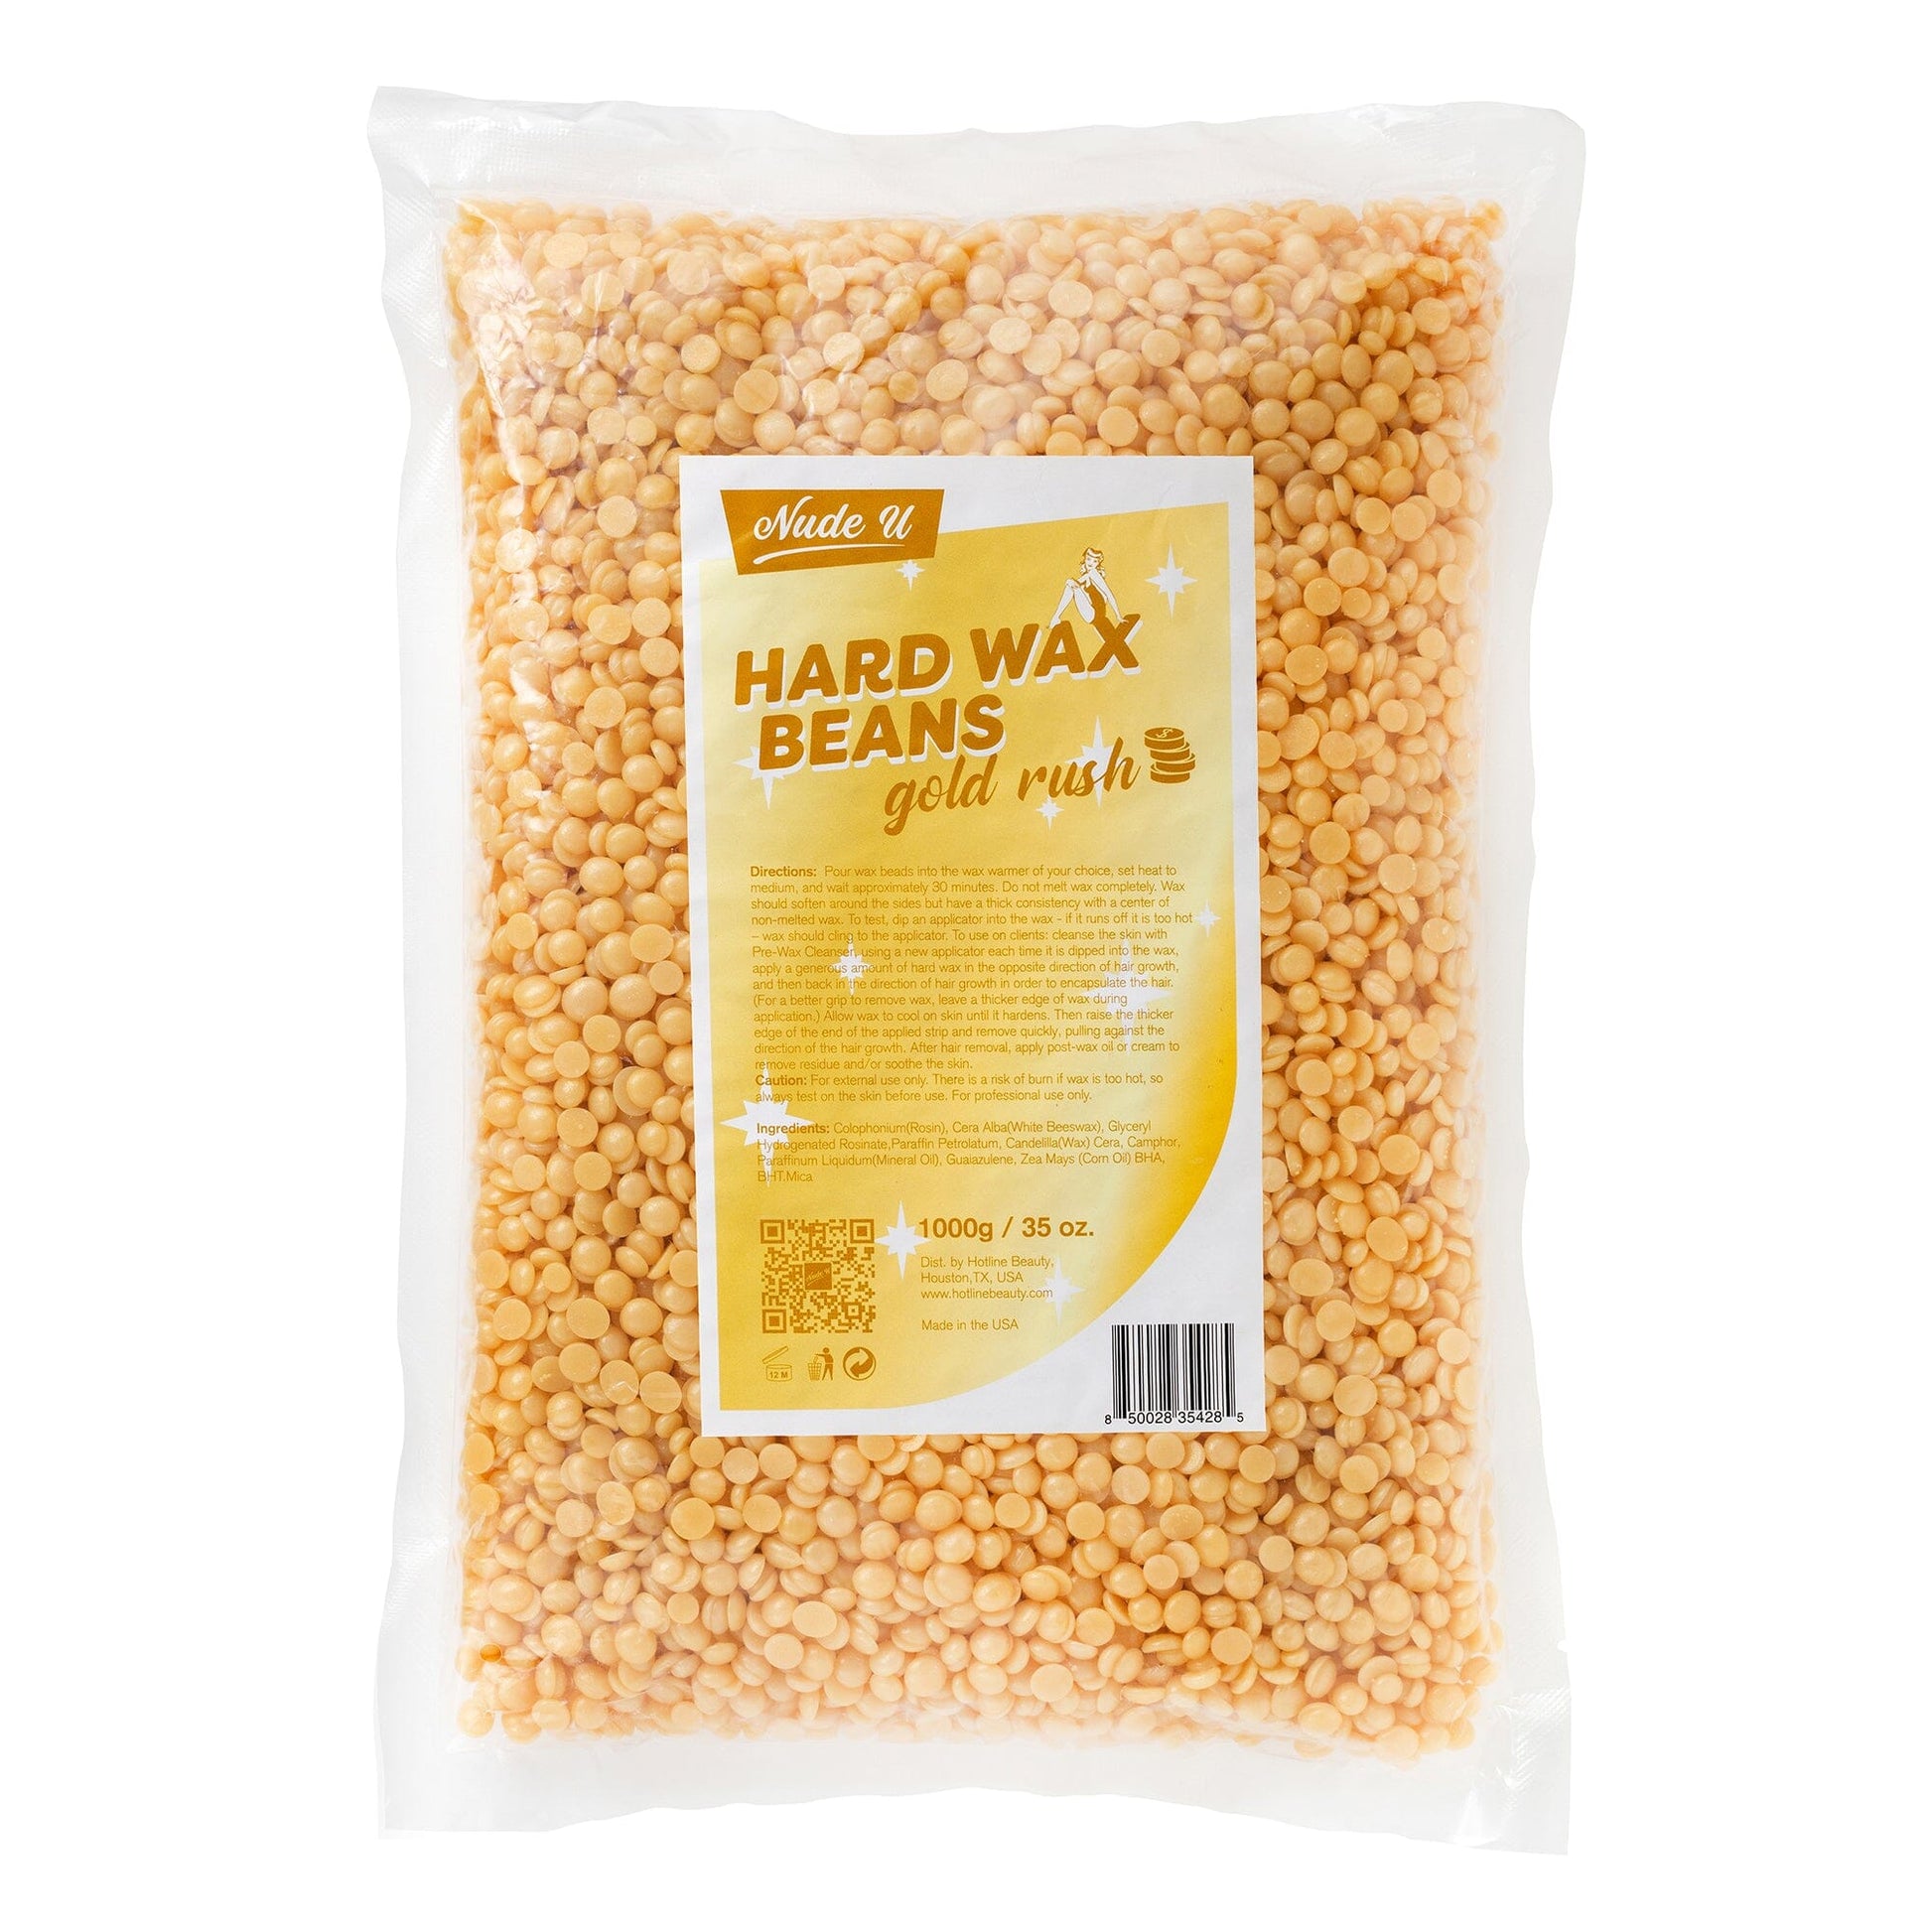 Hard Wax Beans | Golden Rush | NUDE U Waxing Kits & Supplies NUDE U 35oz / 1000g 